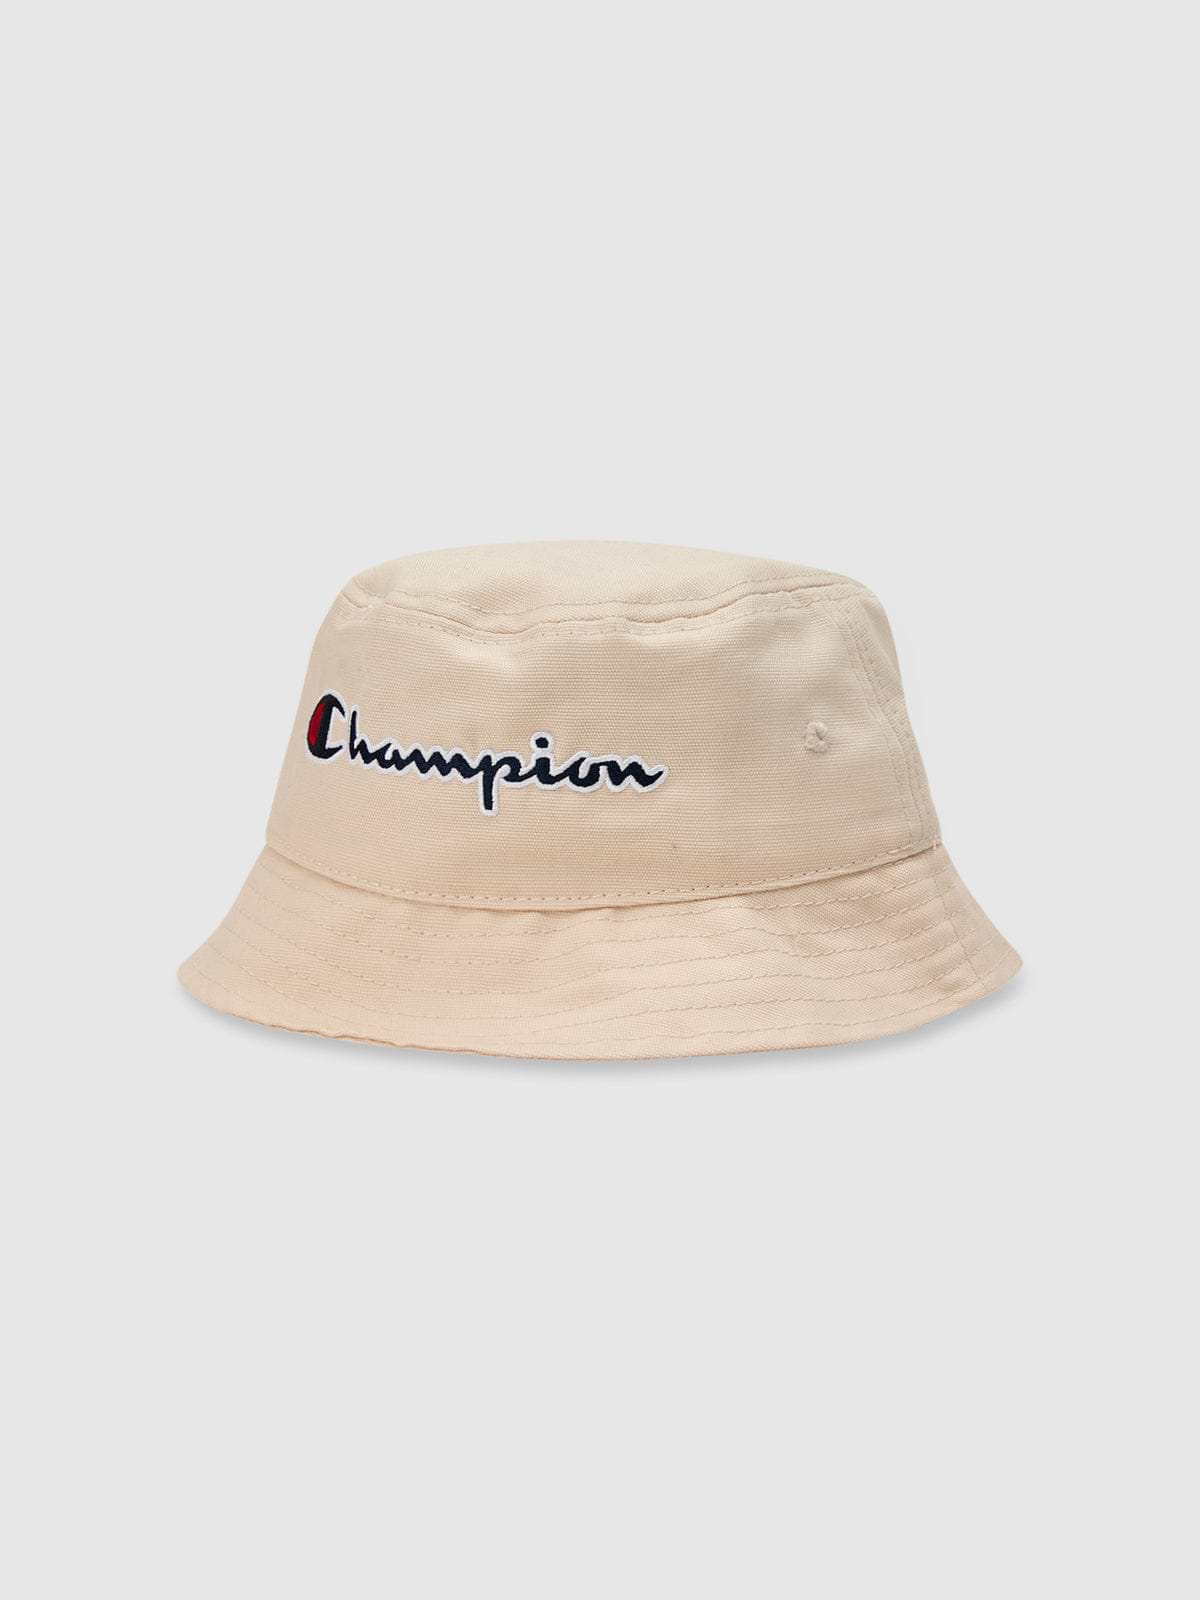 כובע באקט עם לוגו רקום / יוניסקס- Champion|צ'מפיון